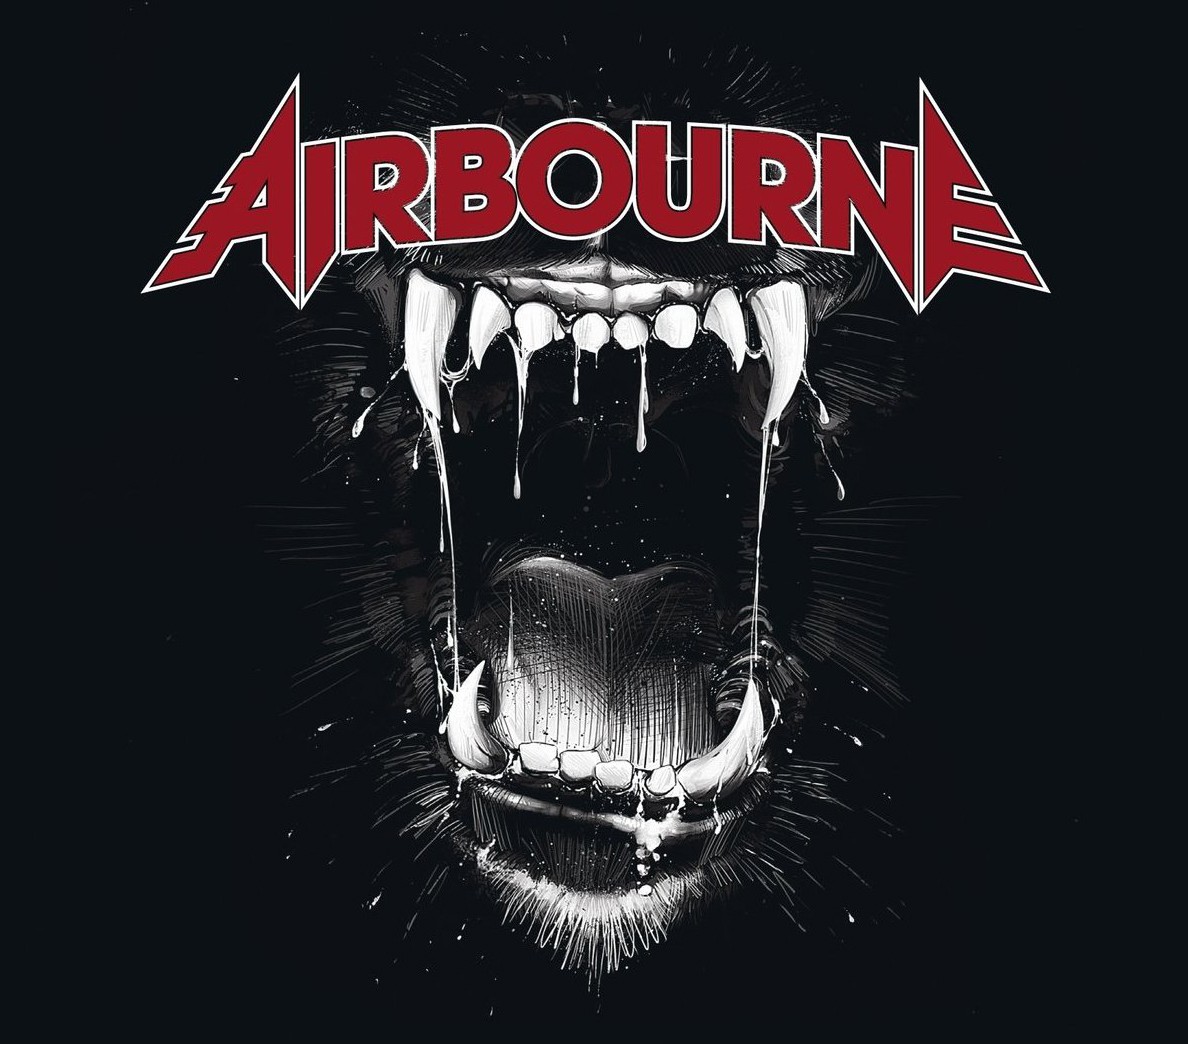 Airbourne - Black Dog Barking